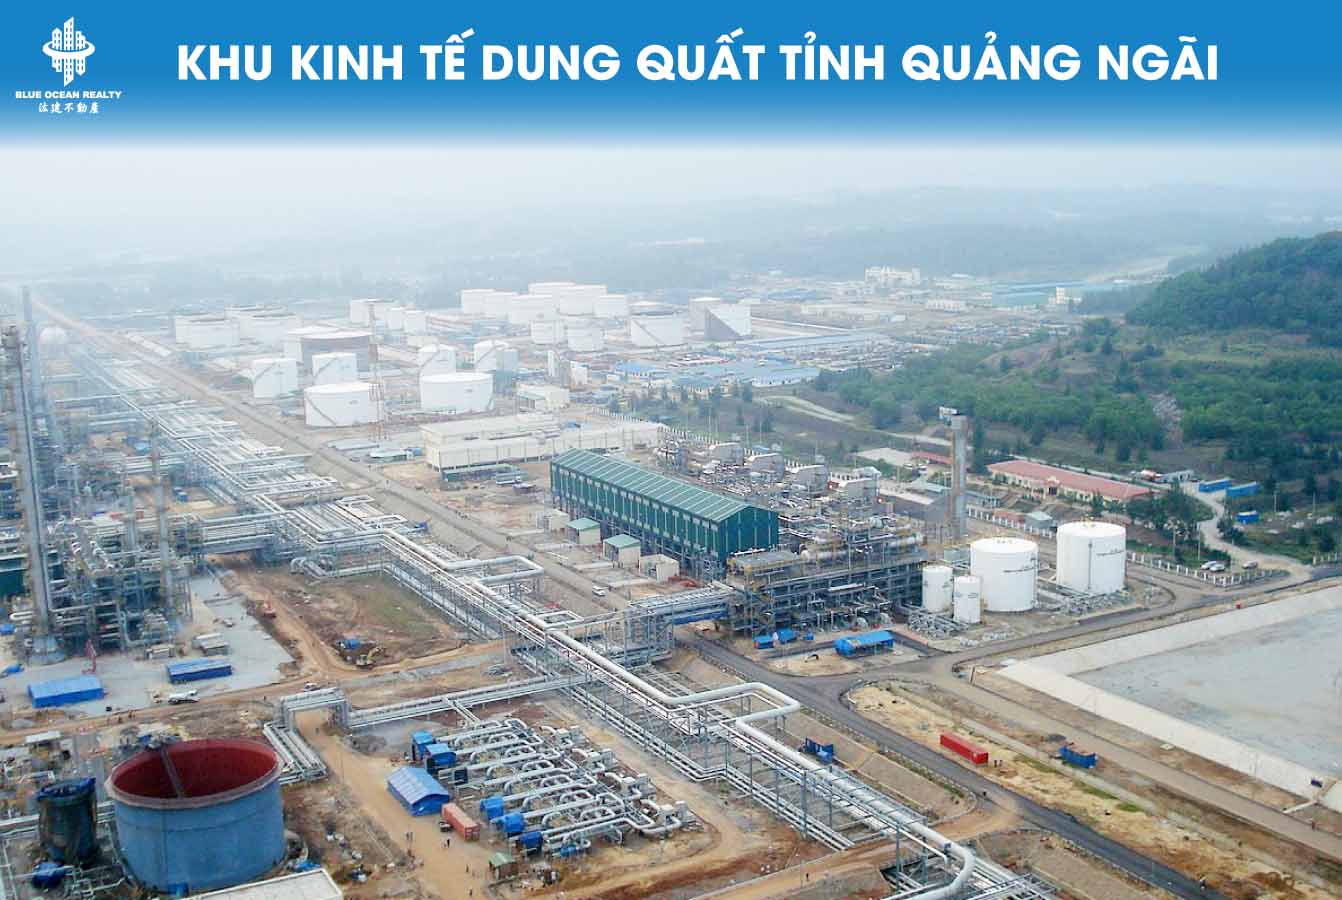 Khu kinh tế Dung Quất tỉnh Quảng Ngãi